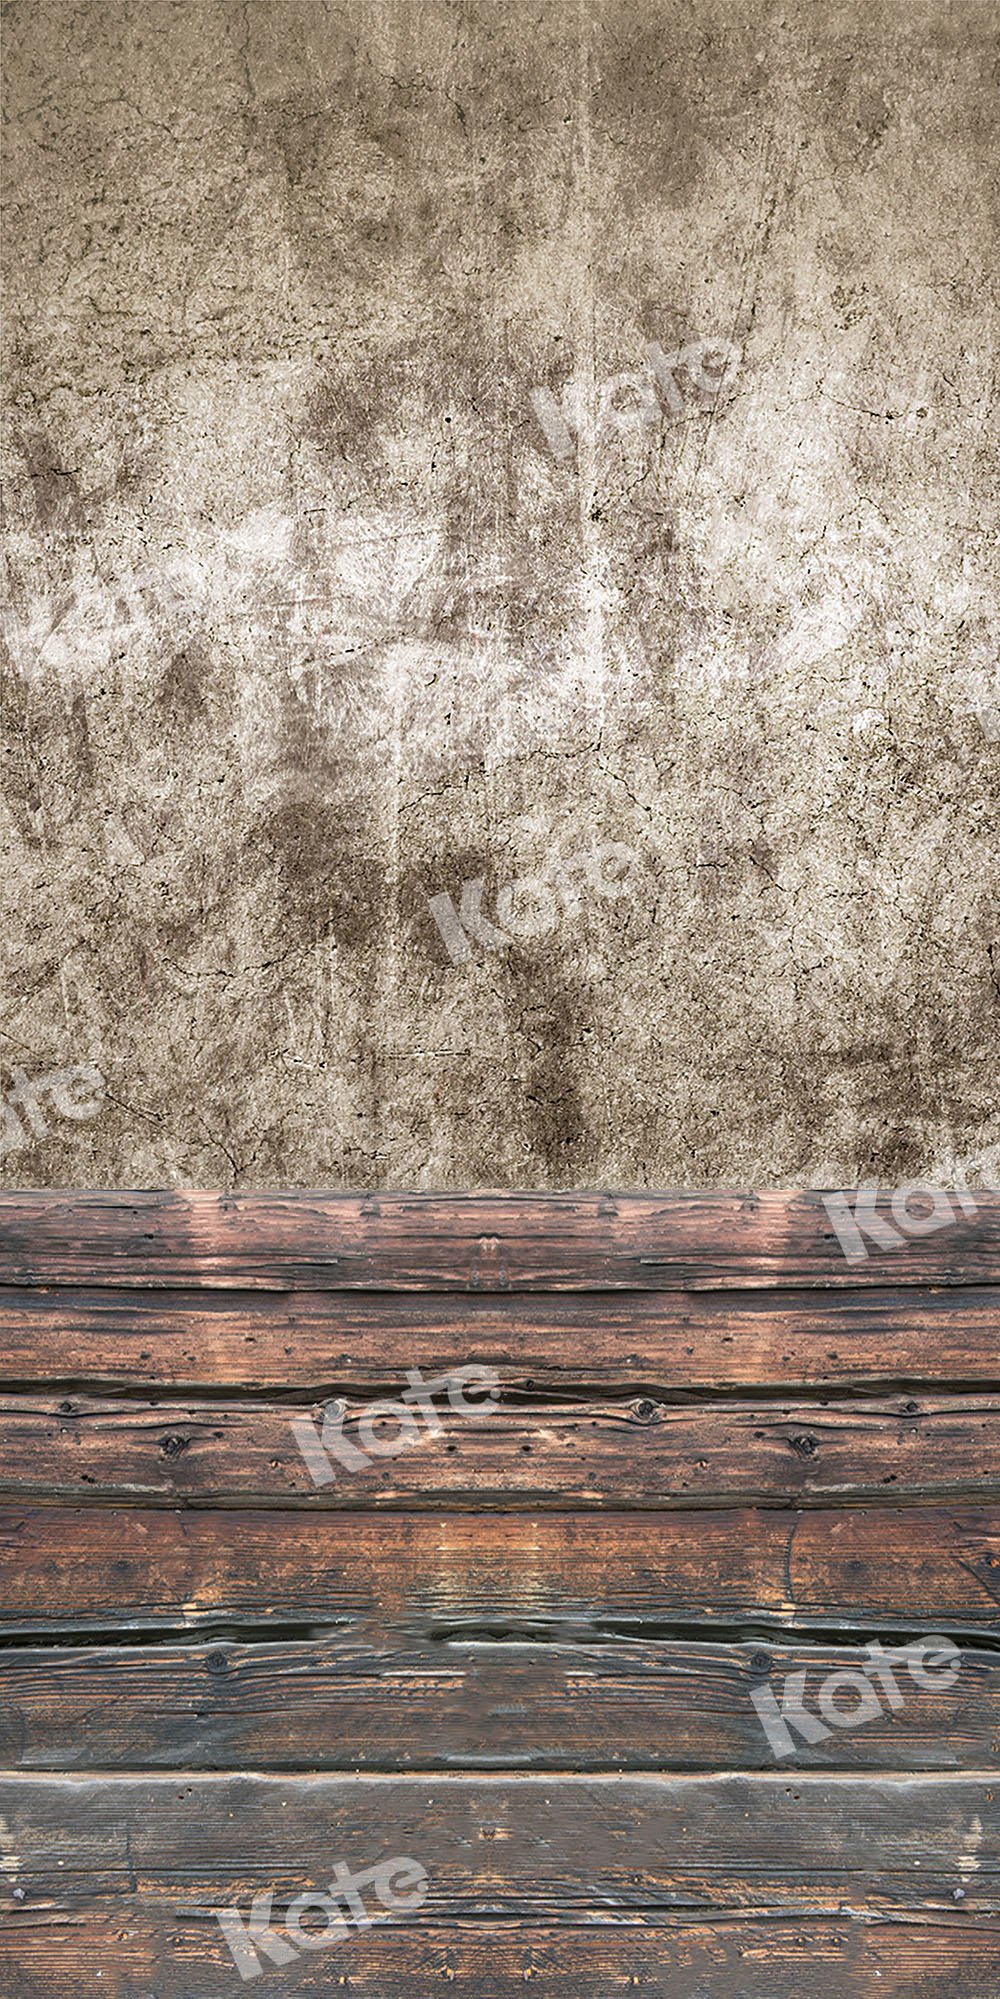 Kate Balayage la toile de fond vieux ciment mur plancher de bois pour la photographie